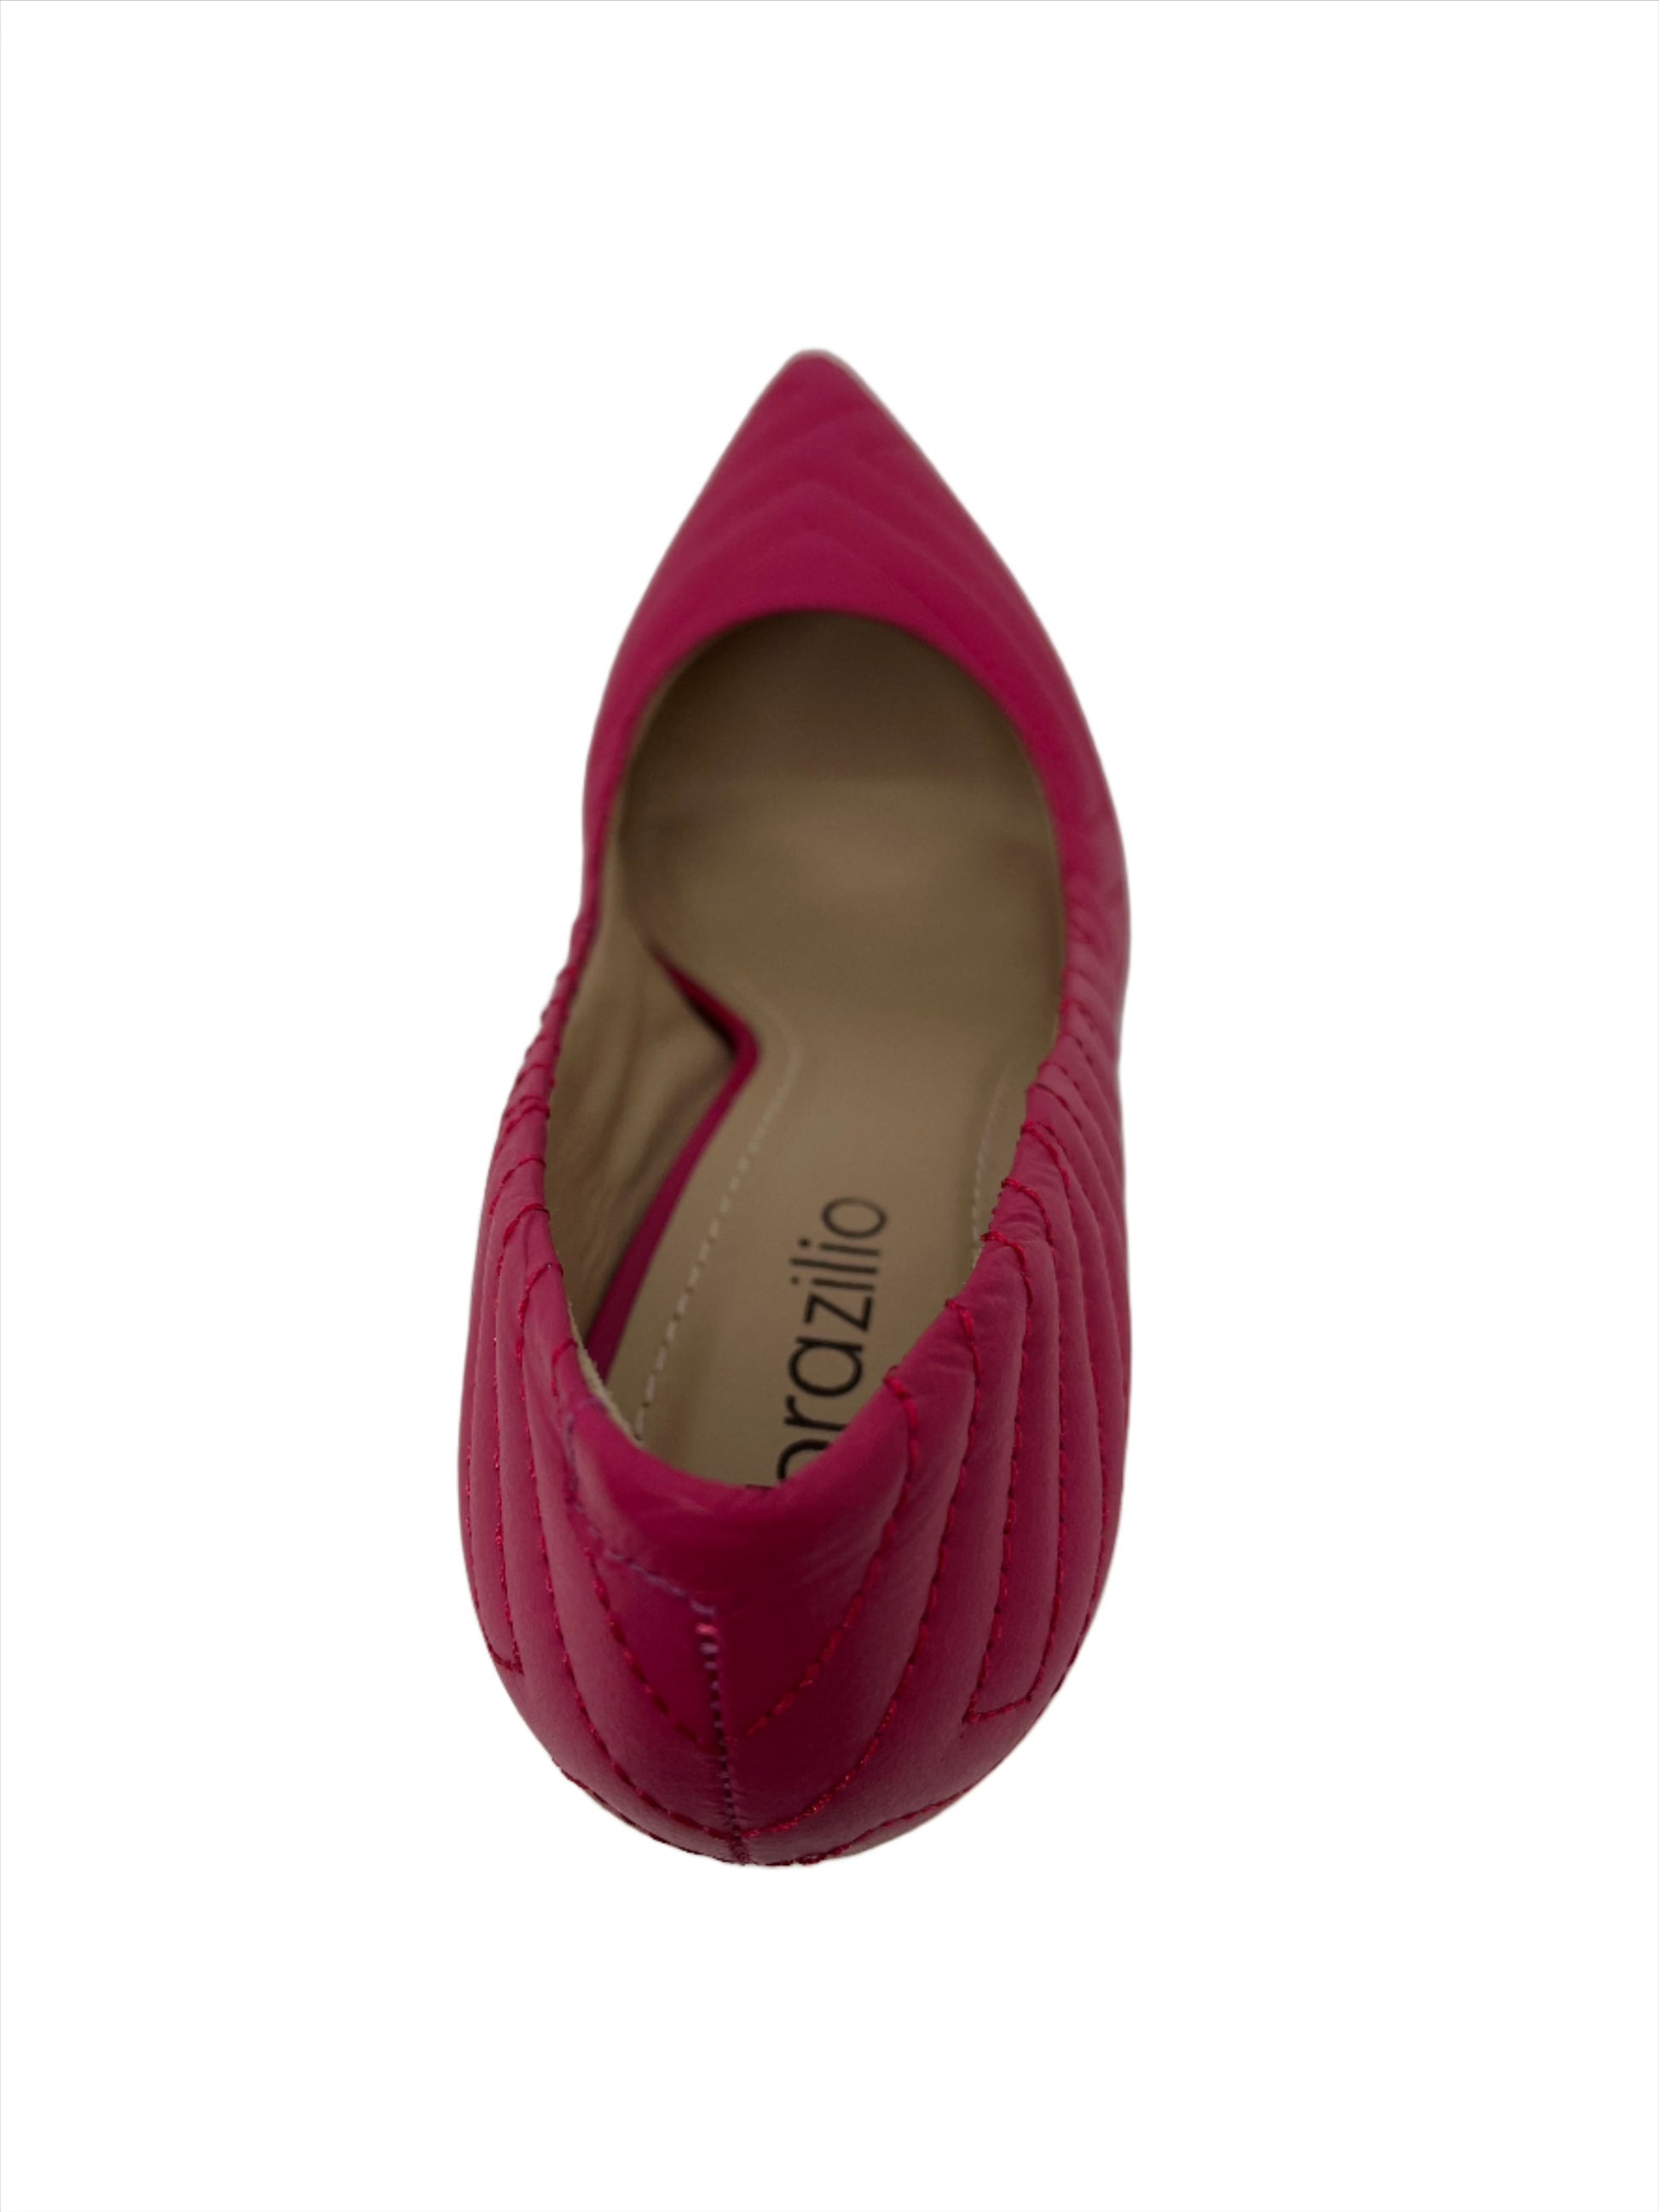 LOPEZ PUMP - BRAZILIO - 4670022, womens footwear - Stomp Shoes Darwin